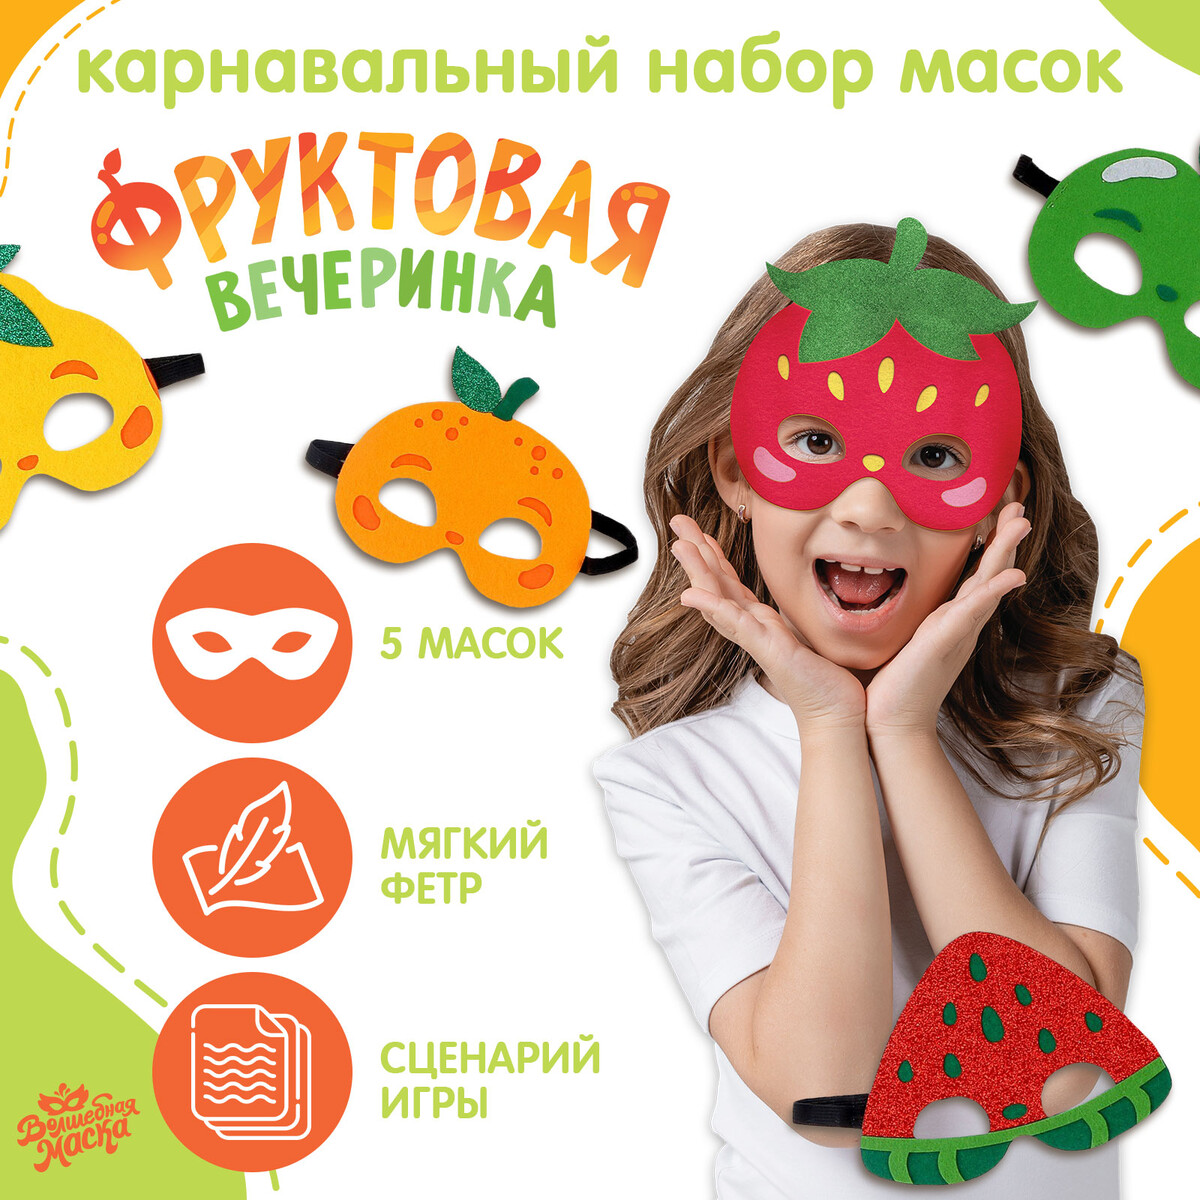 Карнавальный набор масок perfect4u набор очищающих альгинатных масок с пребиотиками и экстрактом кофе для лица 5 шт